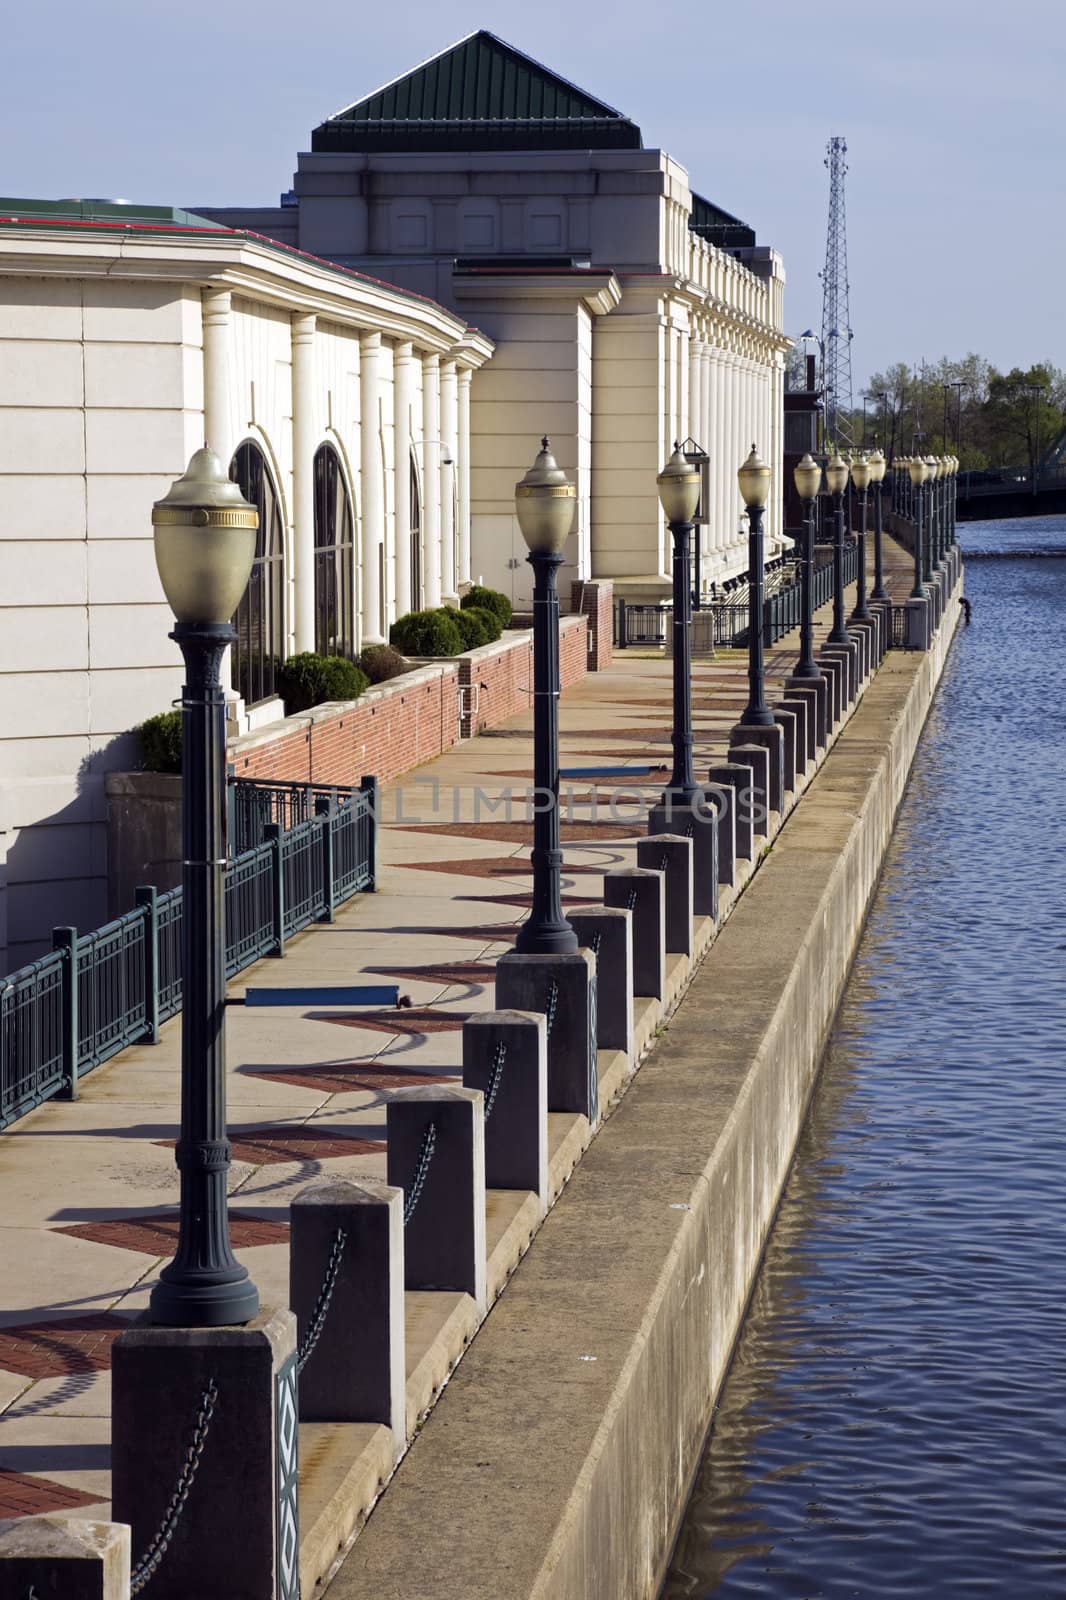 Riverwalk in Joliet by benkrut